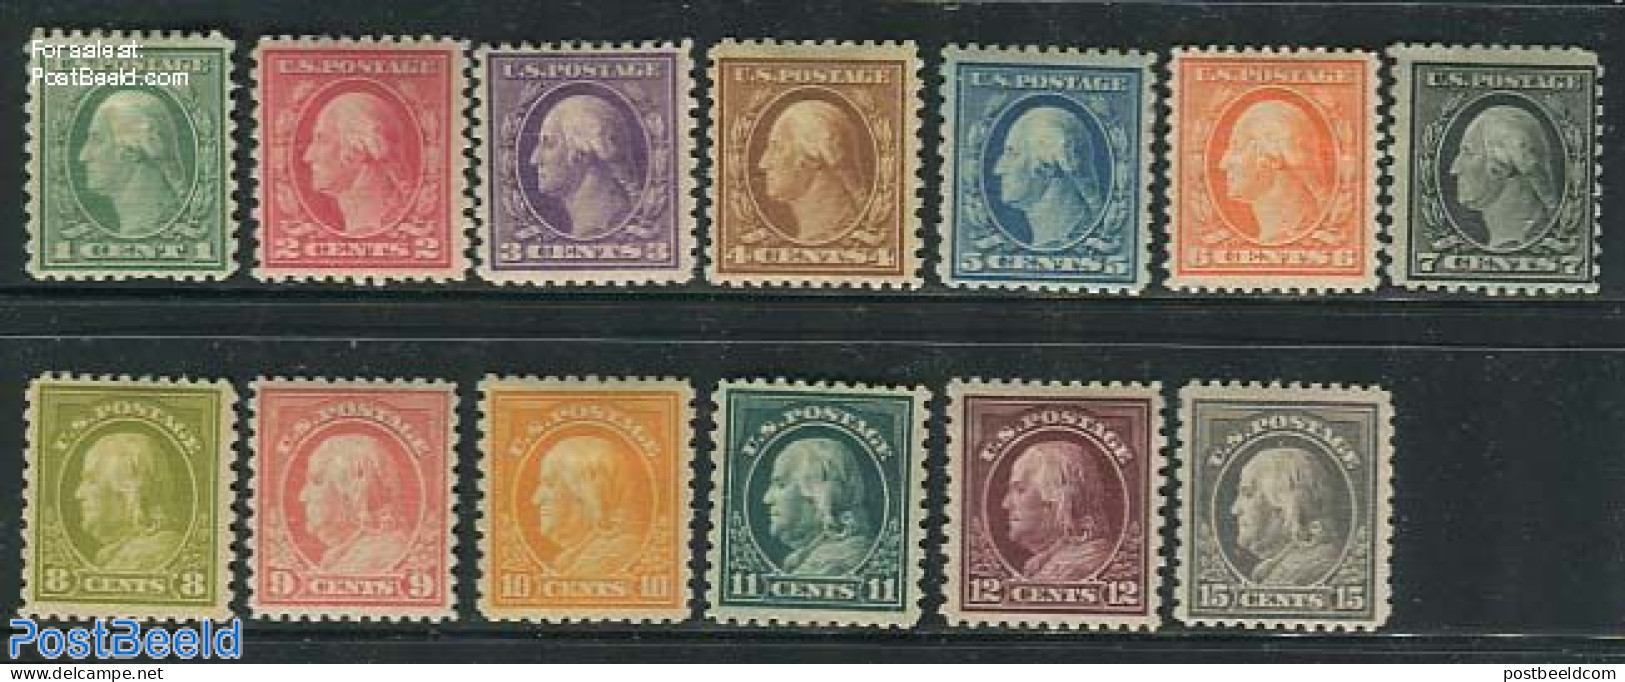 United States Of America 1916 Definitives, Perf. 10, 13v, Shortset (1c-15c), Unused (hinged) - Unused Stamps